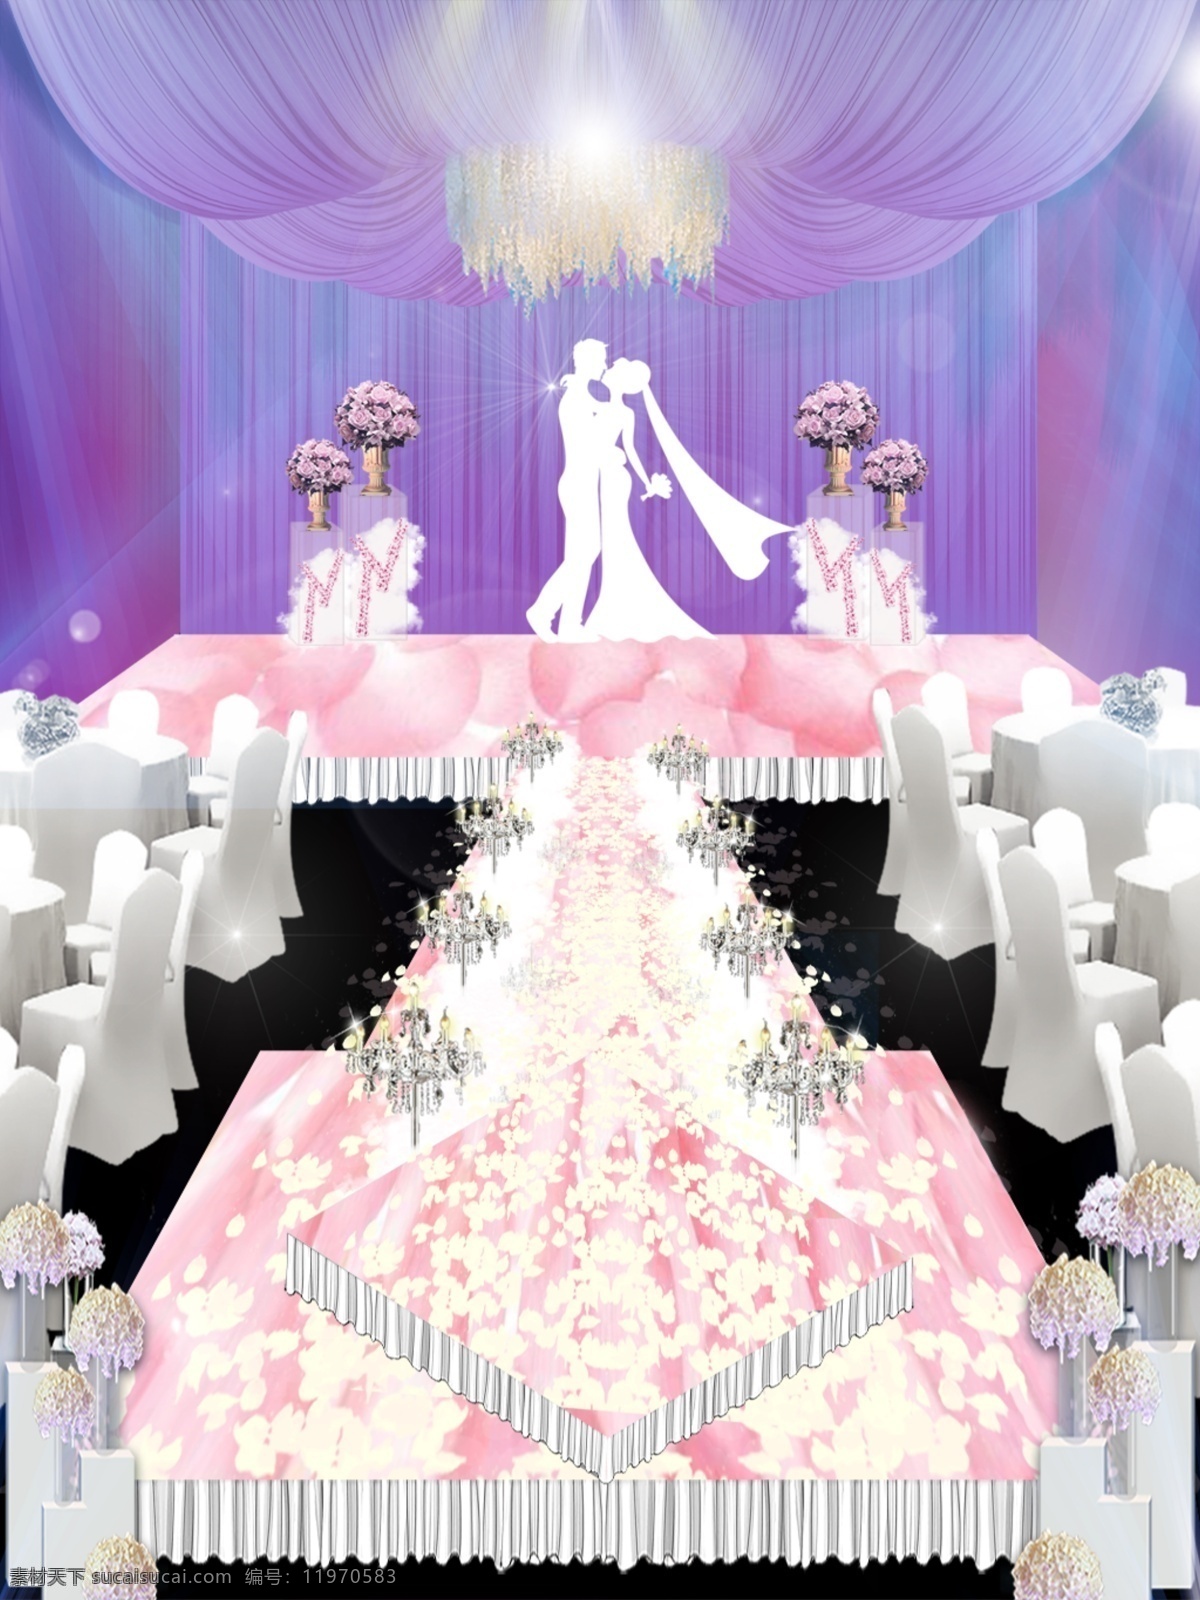 梦幻 粉色 鲜花 台 婚礼 效果图 浪漫 花瓣 婚礼效果图 分层